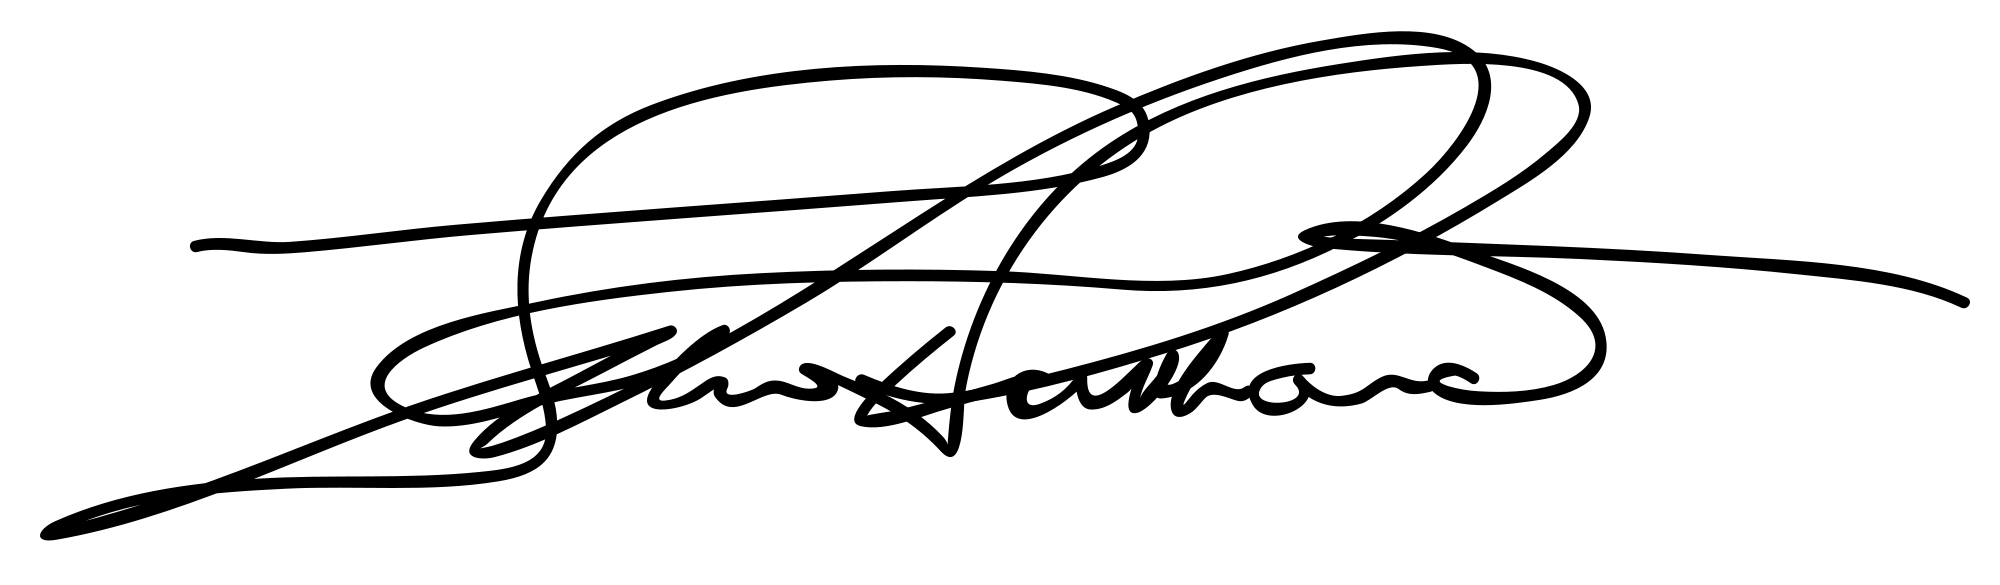 L. Ron Hubbard's Signature